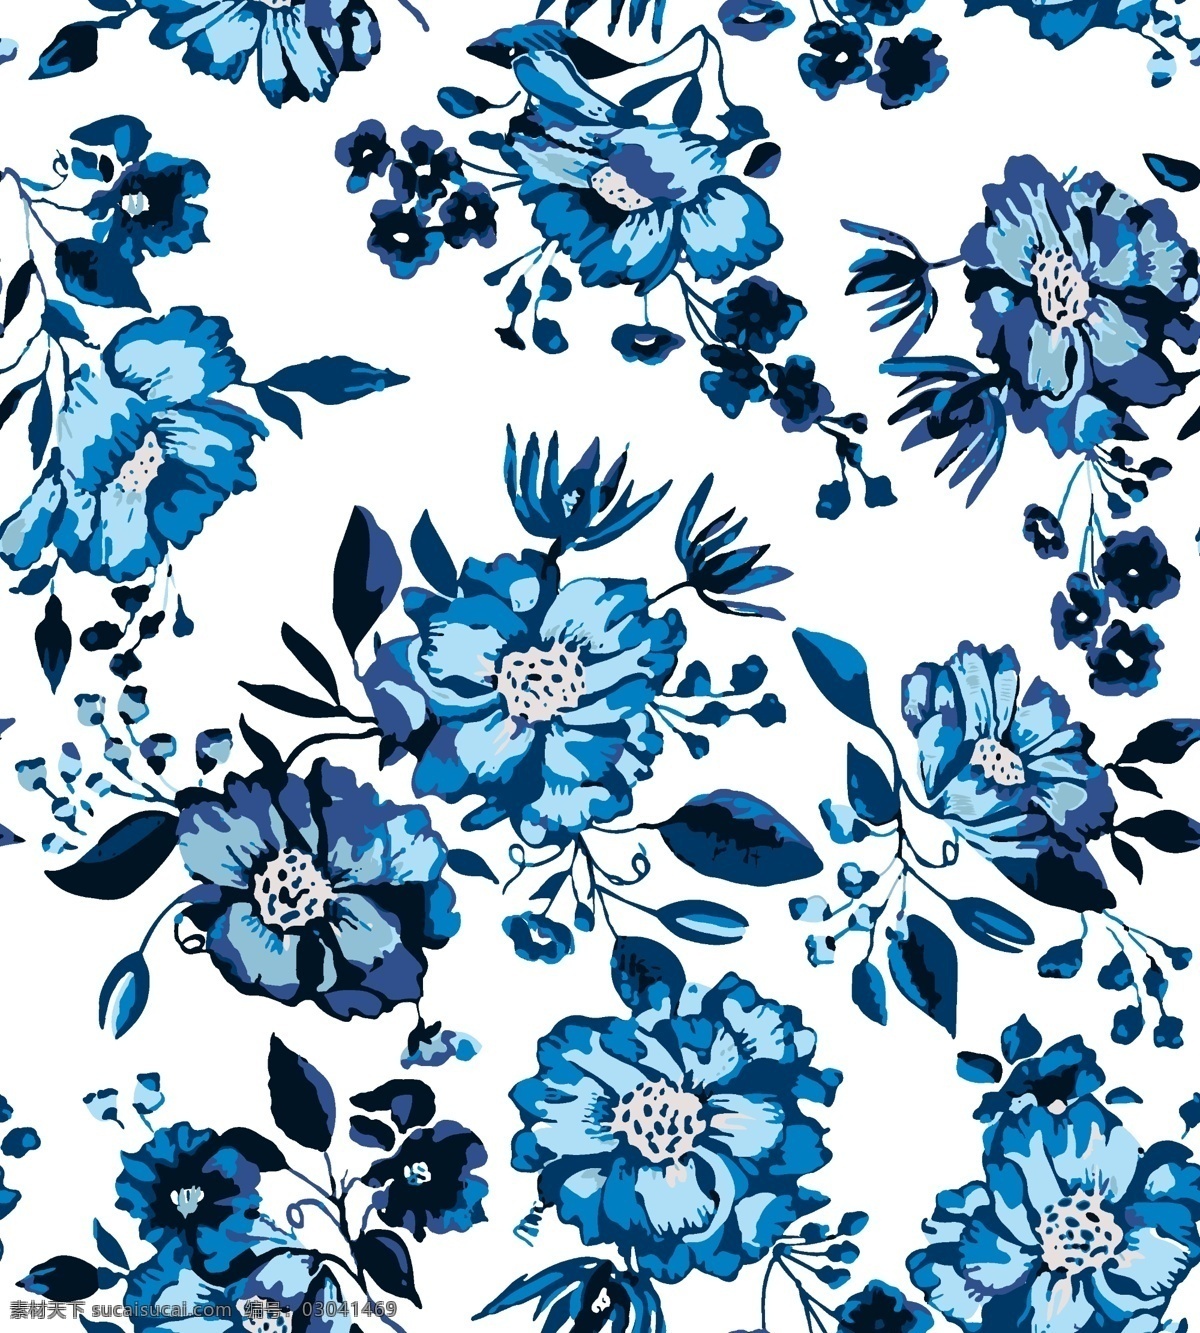 色块 蓝色 花朵 蓝色花朵 色块花 蓝色色块花 矢量花朵 数码印花